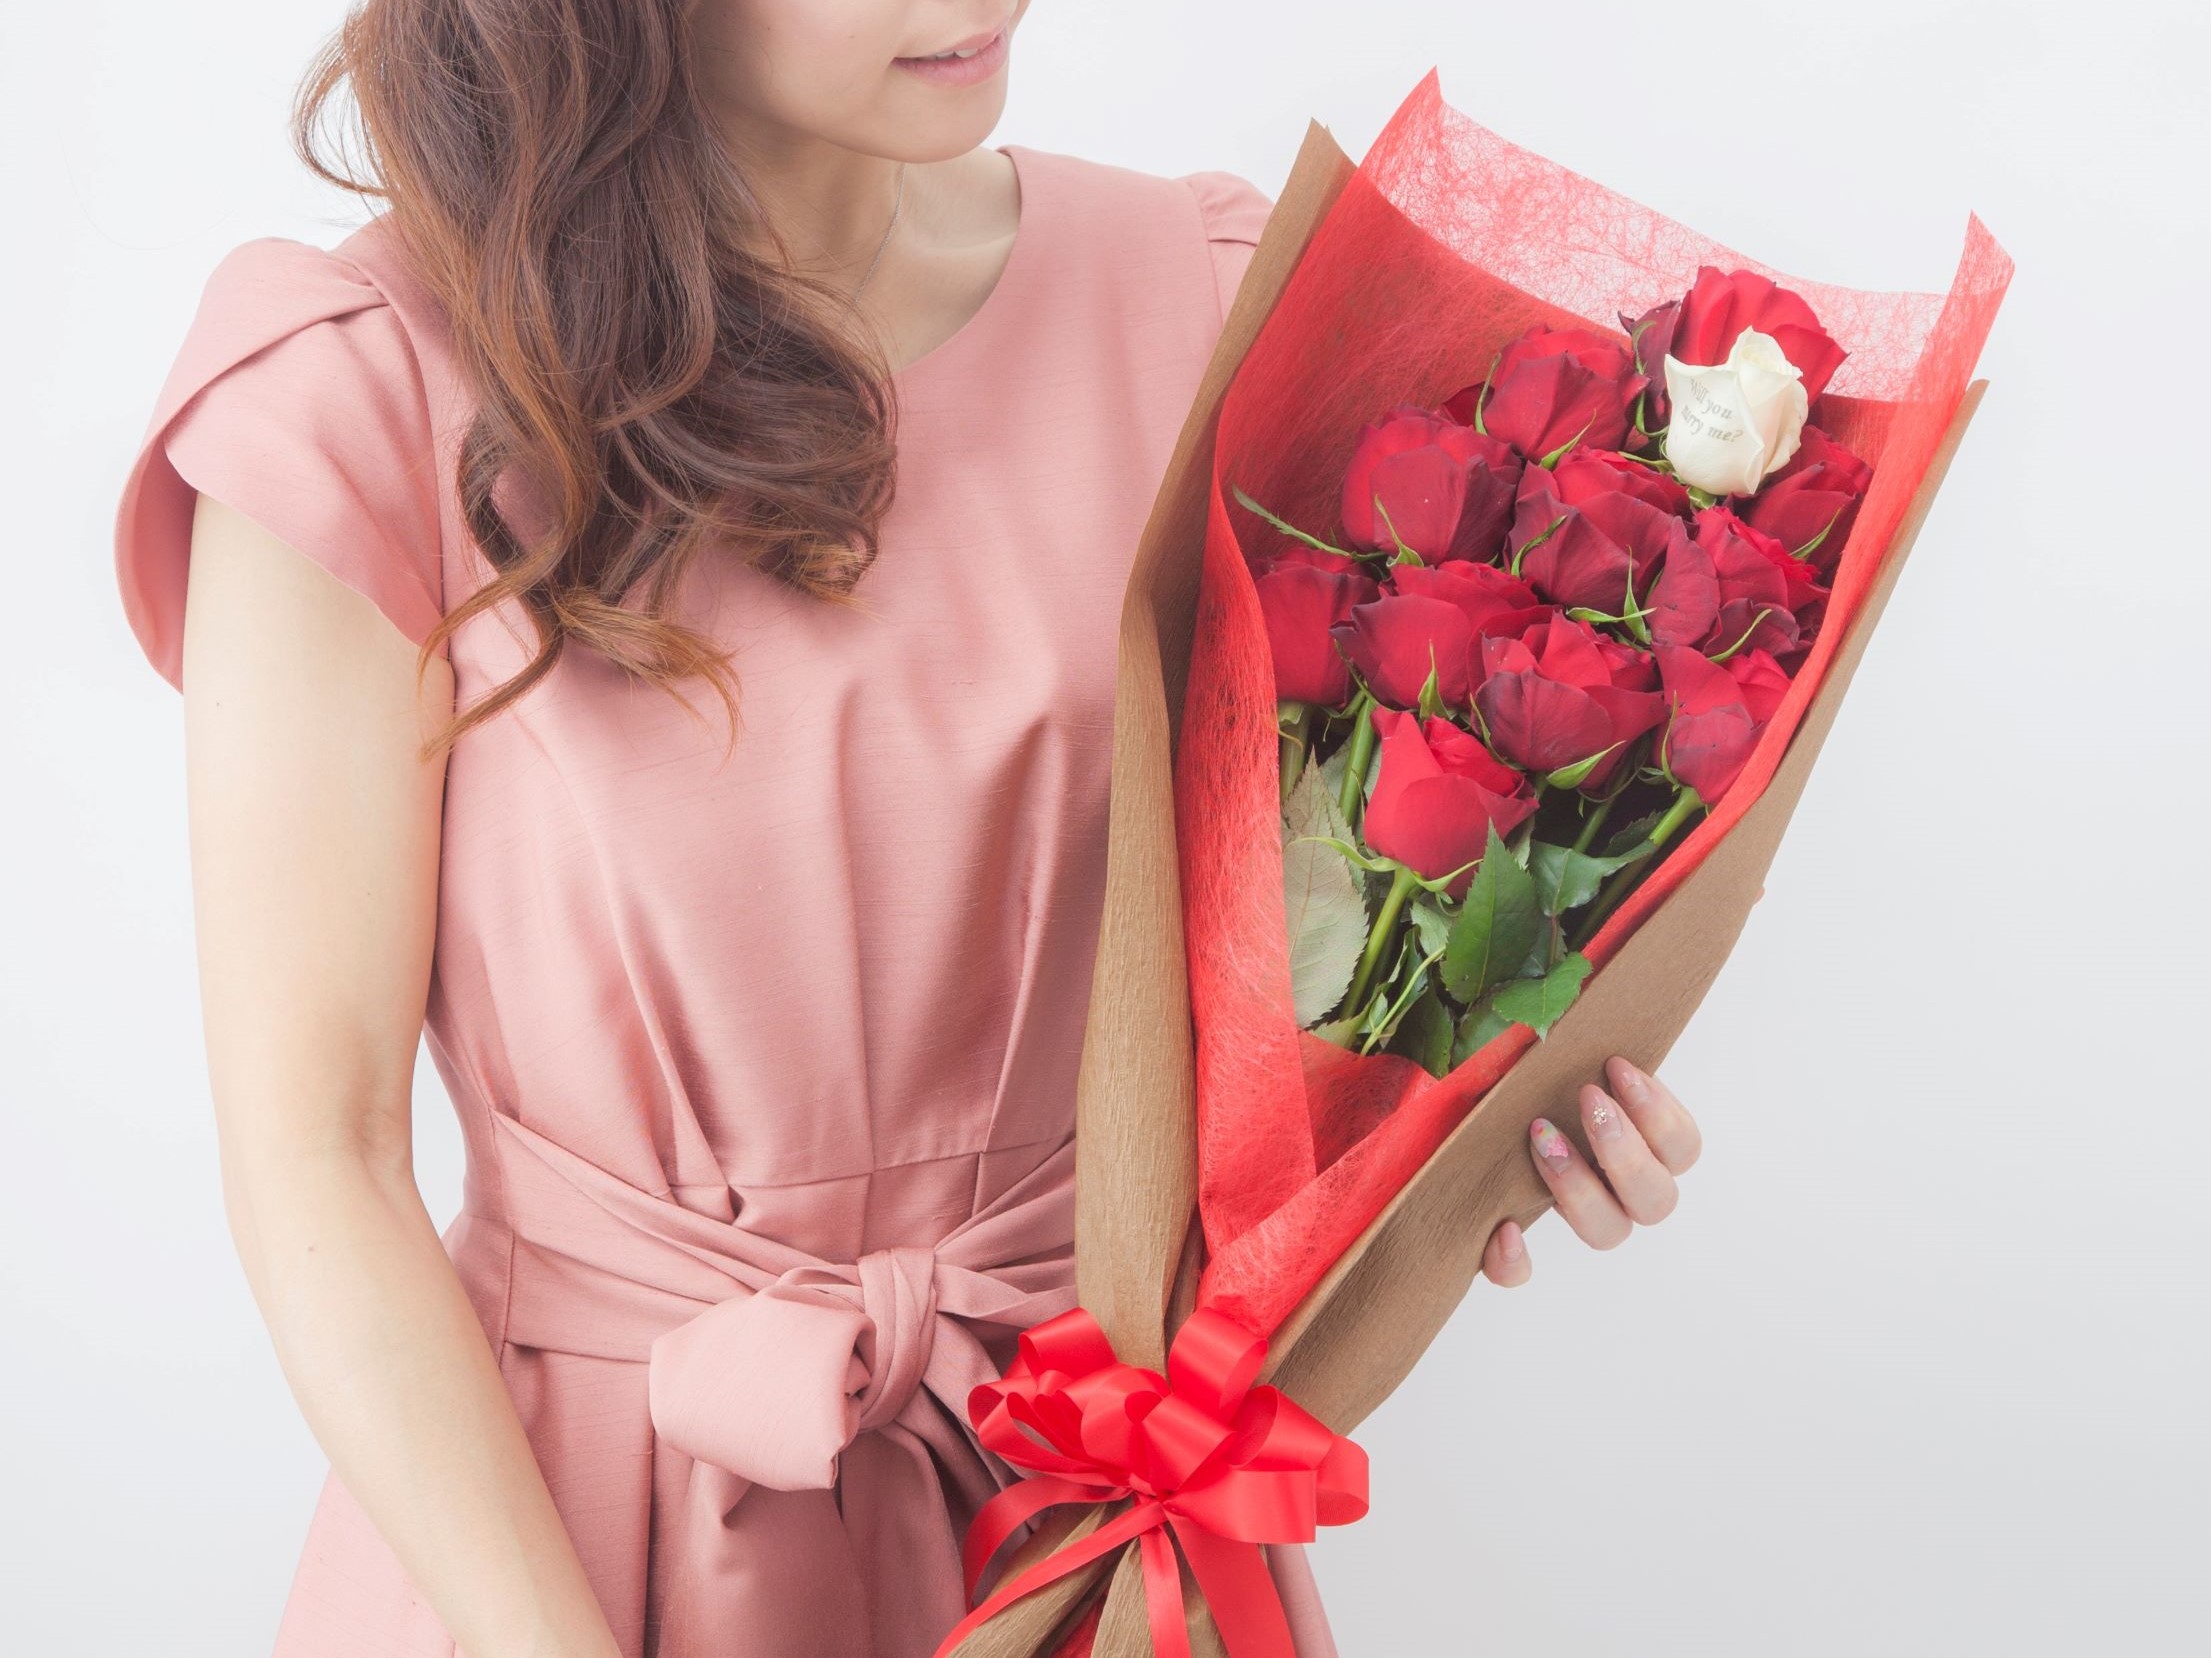 プロポーズ用のバラの花束を抱えた女性